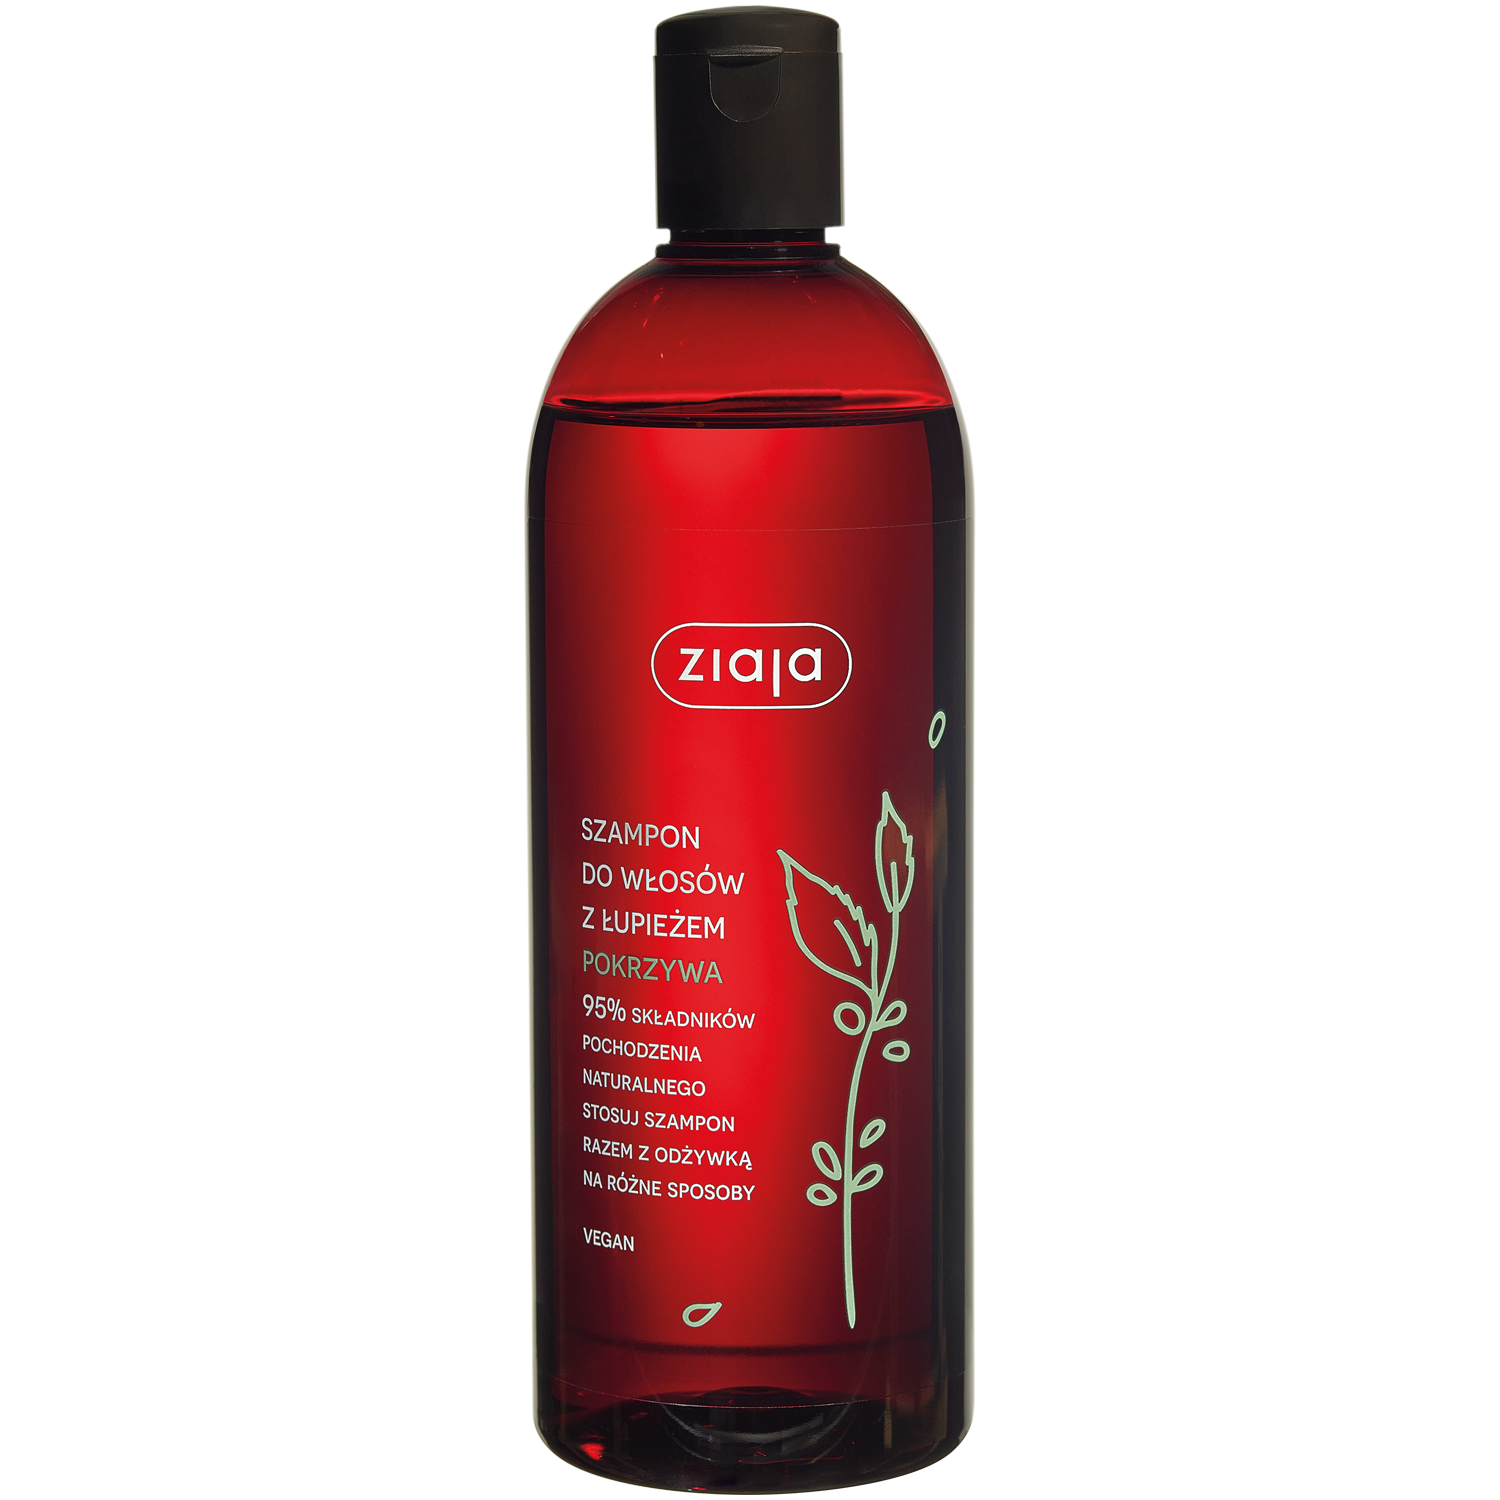 ziaja szampon pokrzywowy aloesowy figowy